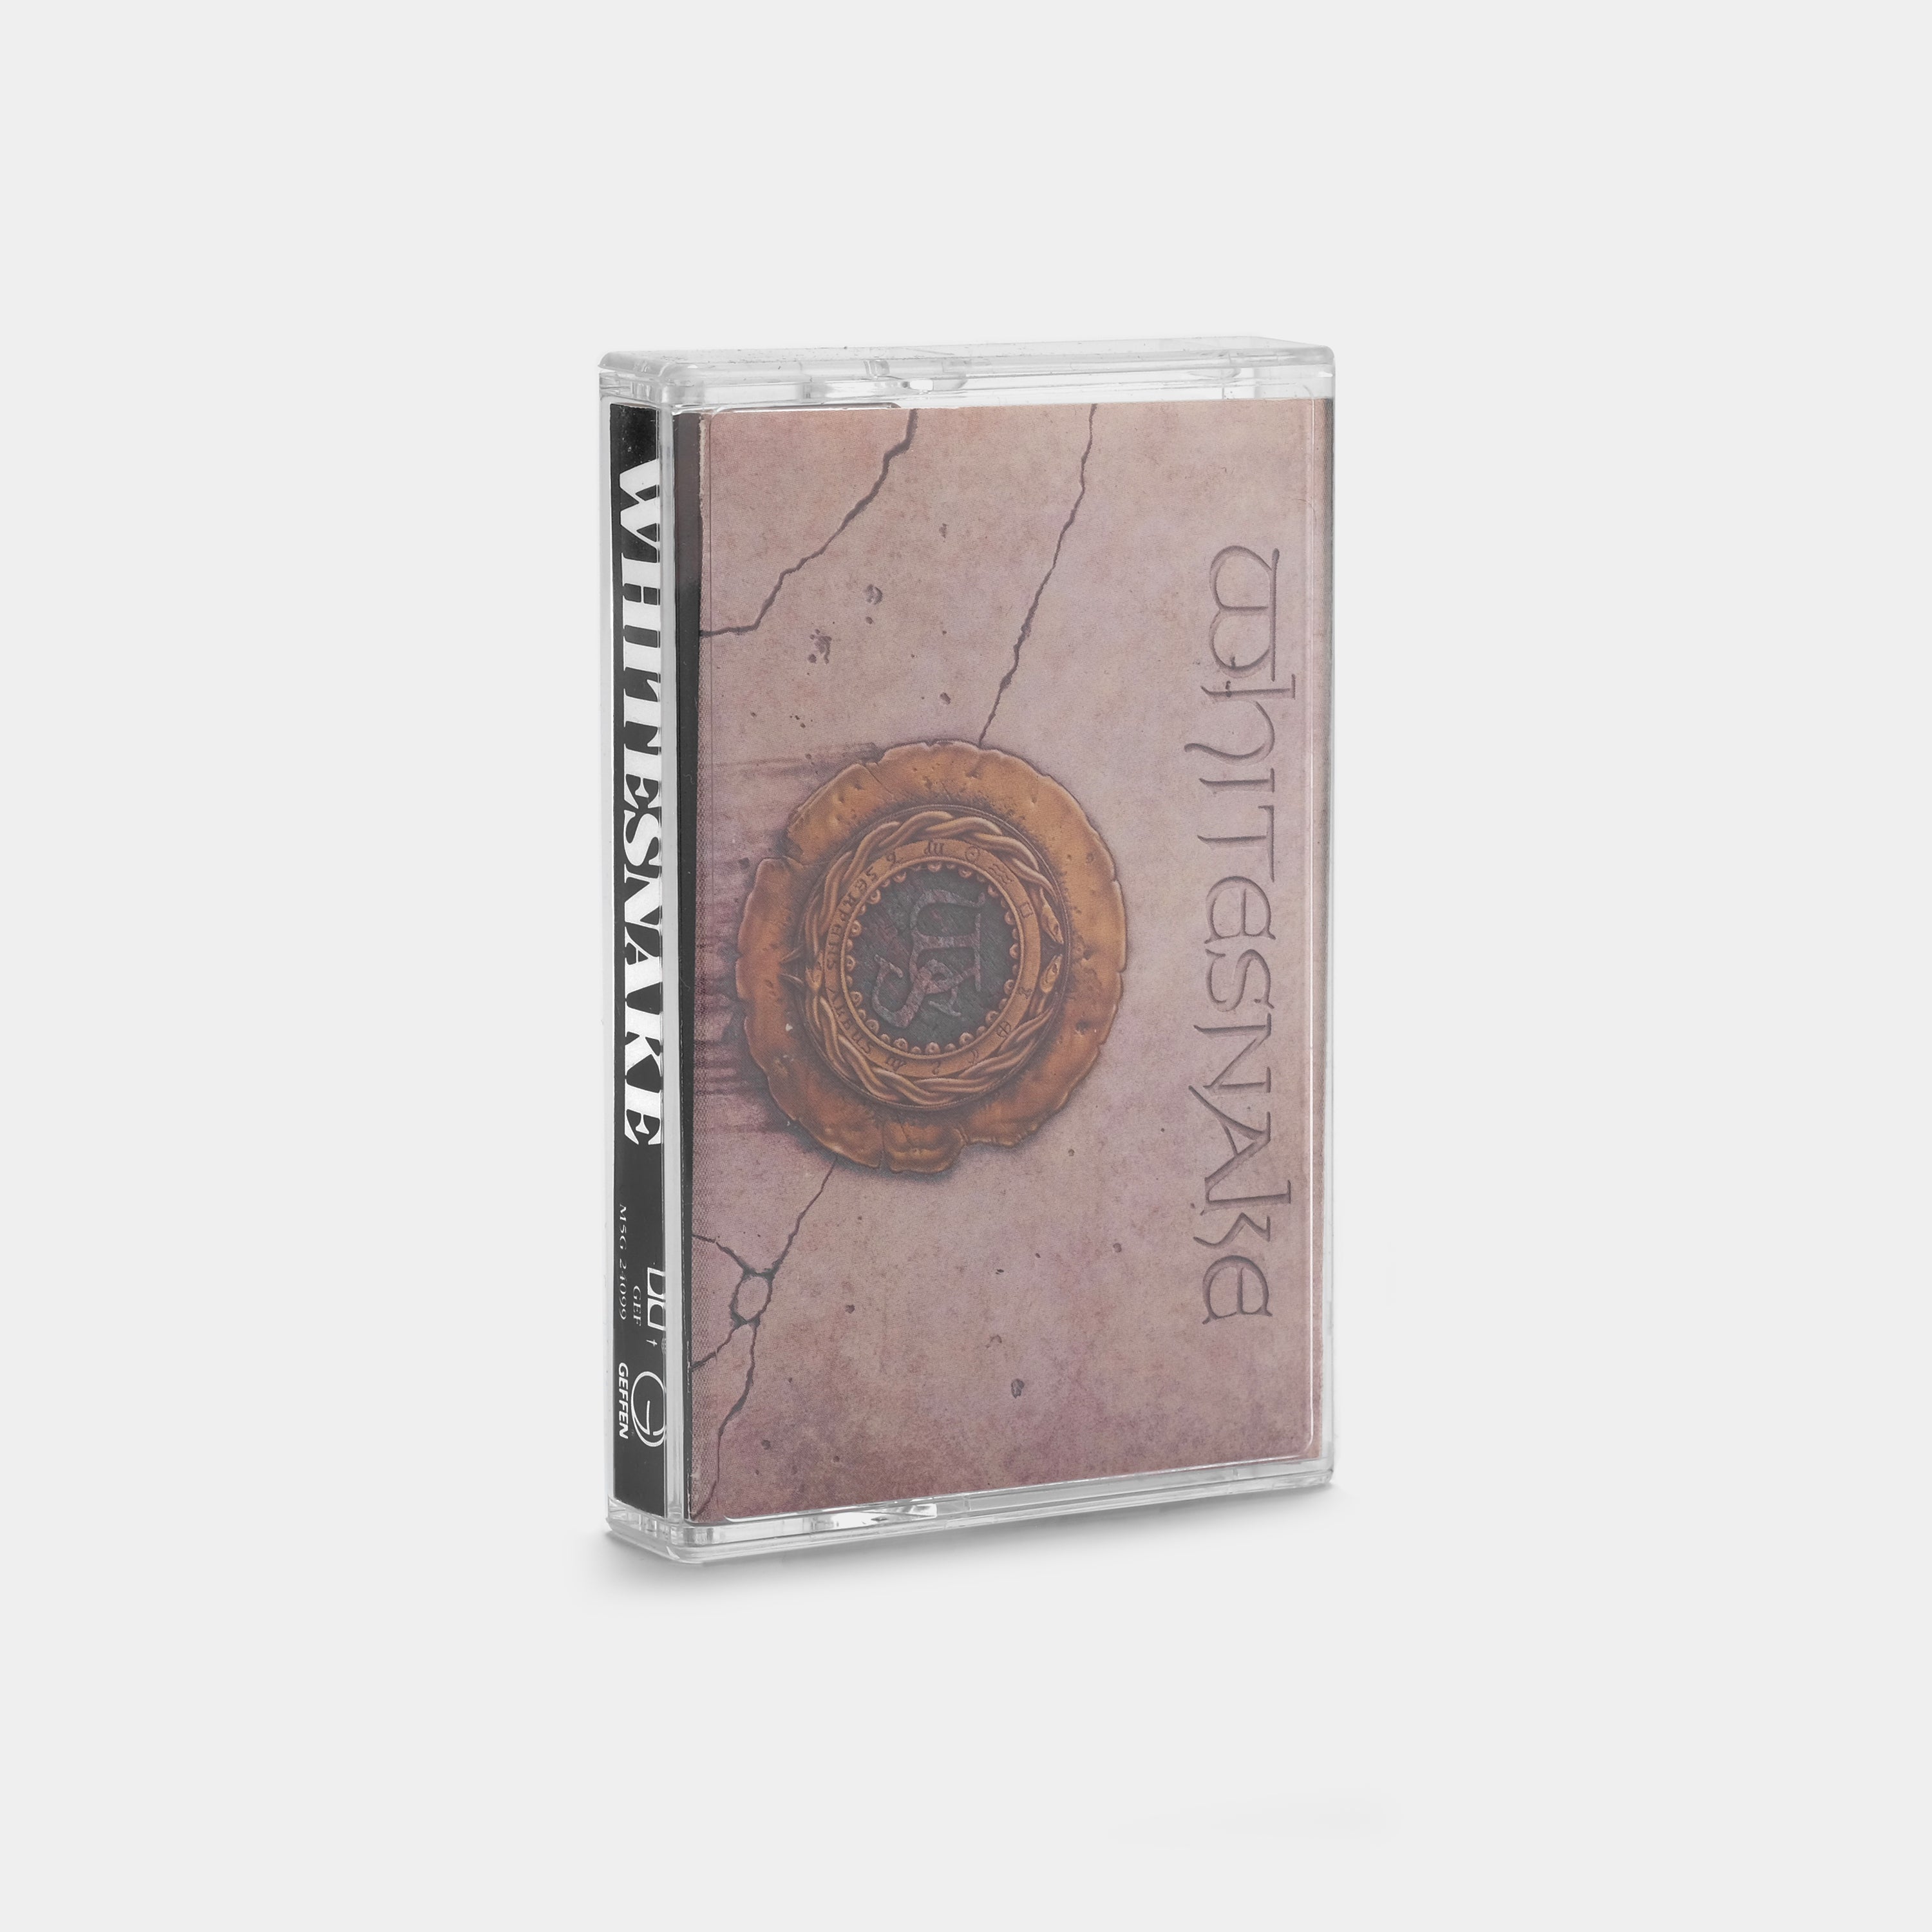 Whitesnake - Whitesnake Cassette Tape